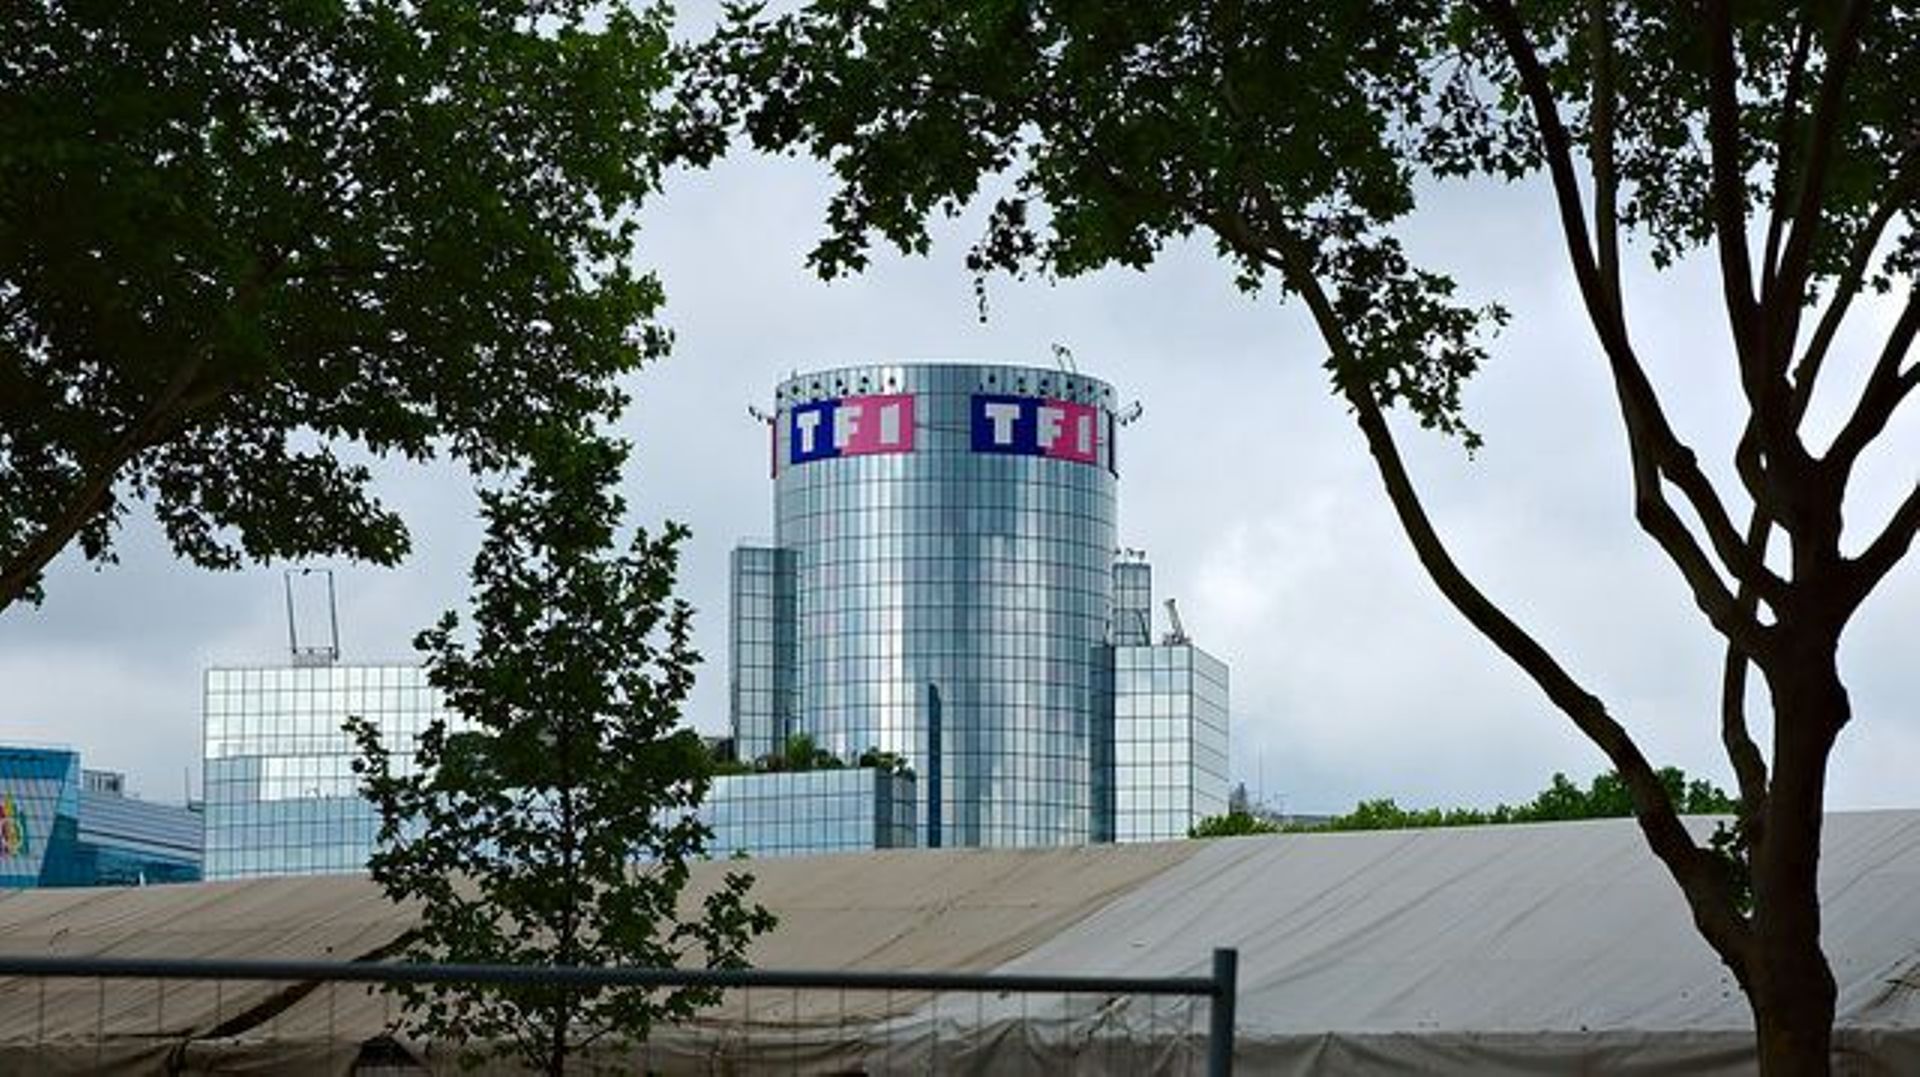 TF1 sur le marché publicitaire belge : quel bilan après un an ?